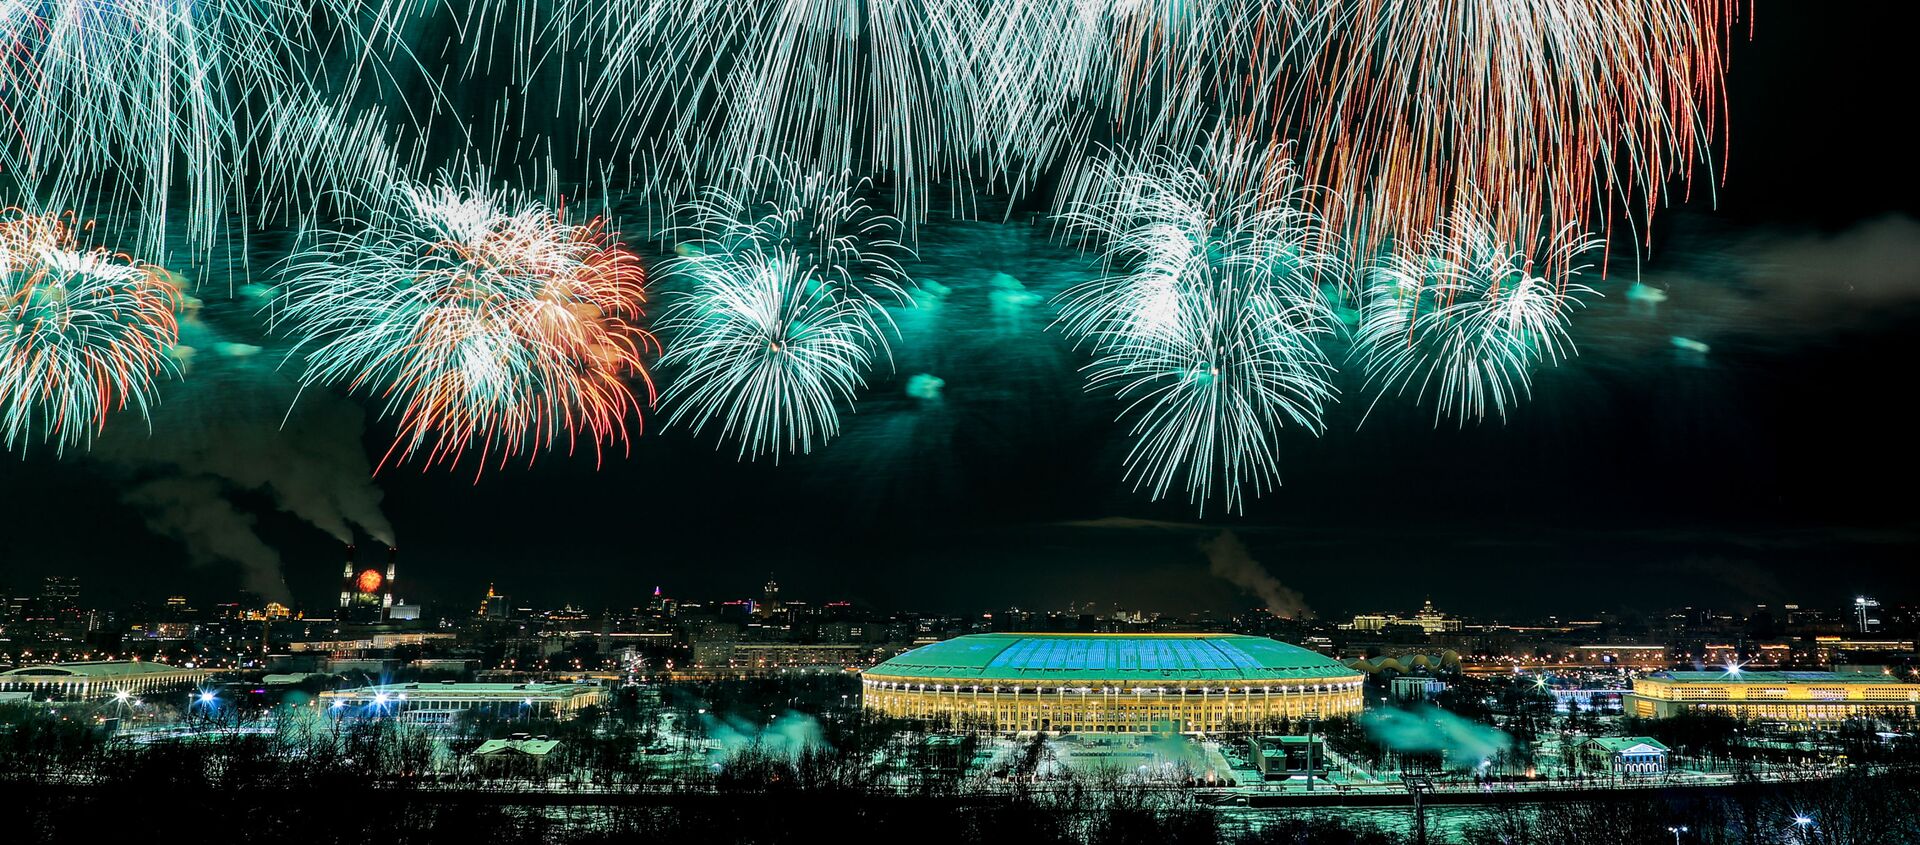 ألعاب نارية فوق ملعب لوجنيكي في موسكو، بمناسبة عيد حماة الوطن في روسيا، 23 فبراير 2021 - سبوتنيك عربي, 1920, 09.06.2021